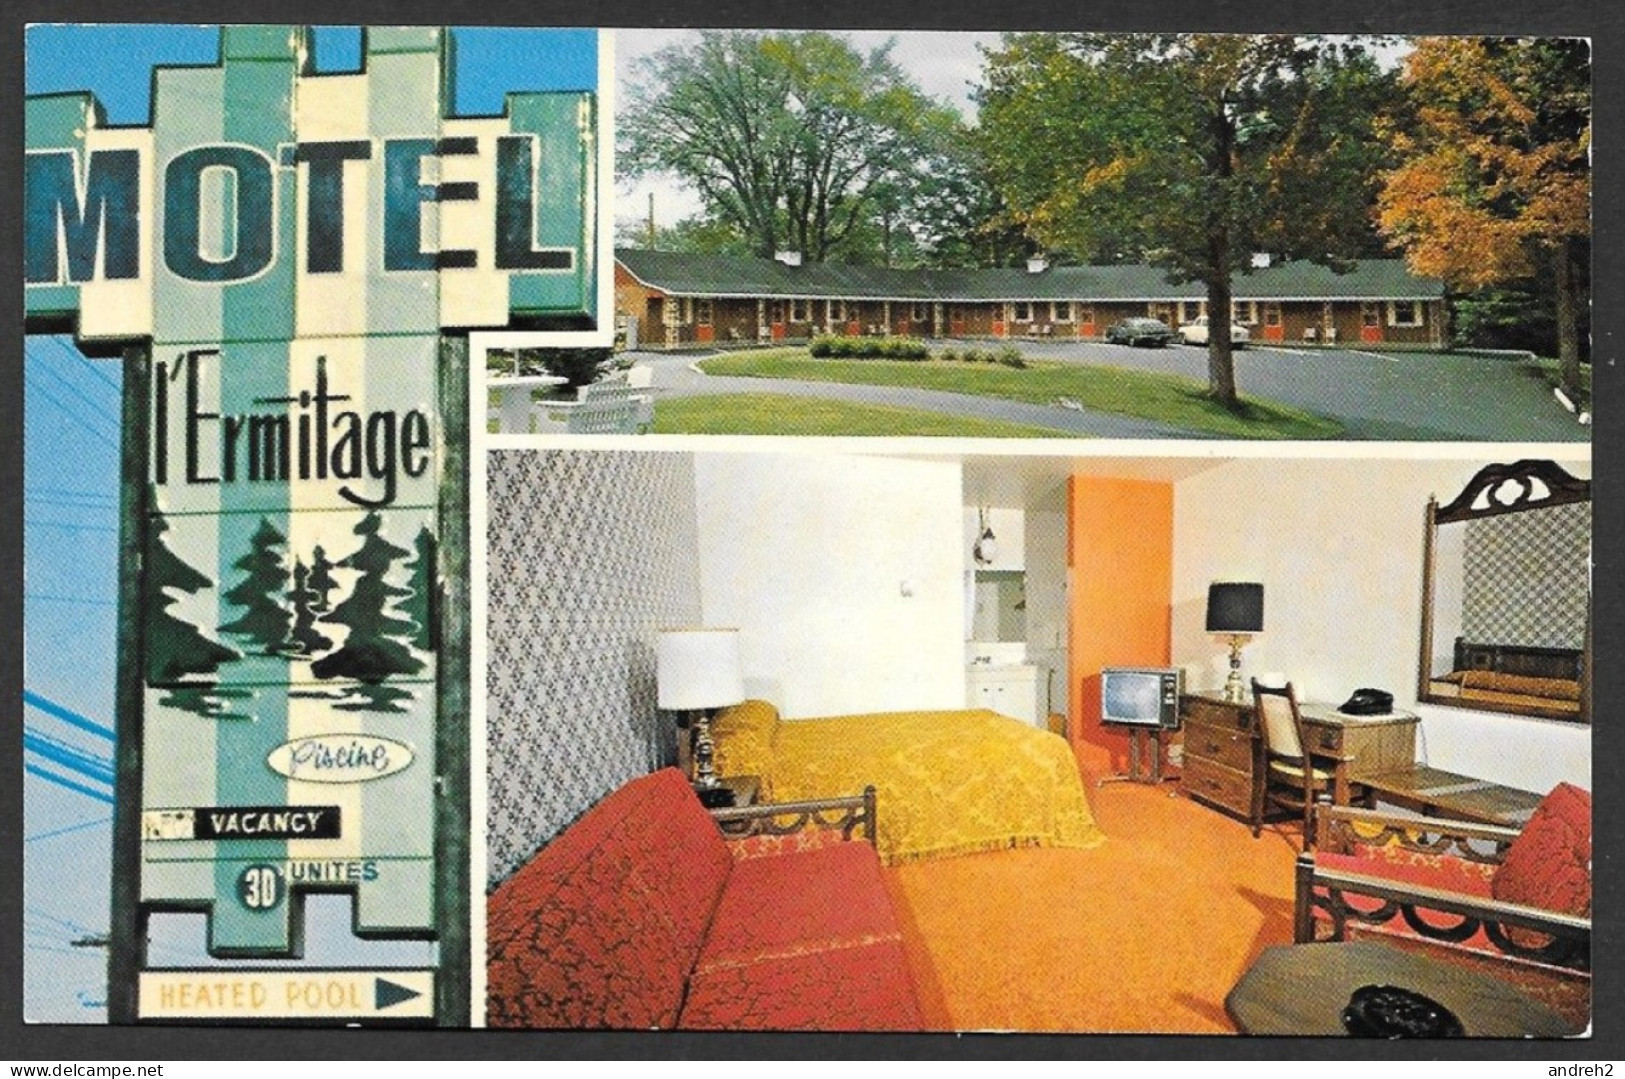 Sherbrooke  Québec - Motel L'ermitage - Lise Et Roméo Vos Hôtes - Carte N'a Pas Voyagée - Uncirculated - Par W. Schermer - Sherbrooke